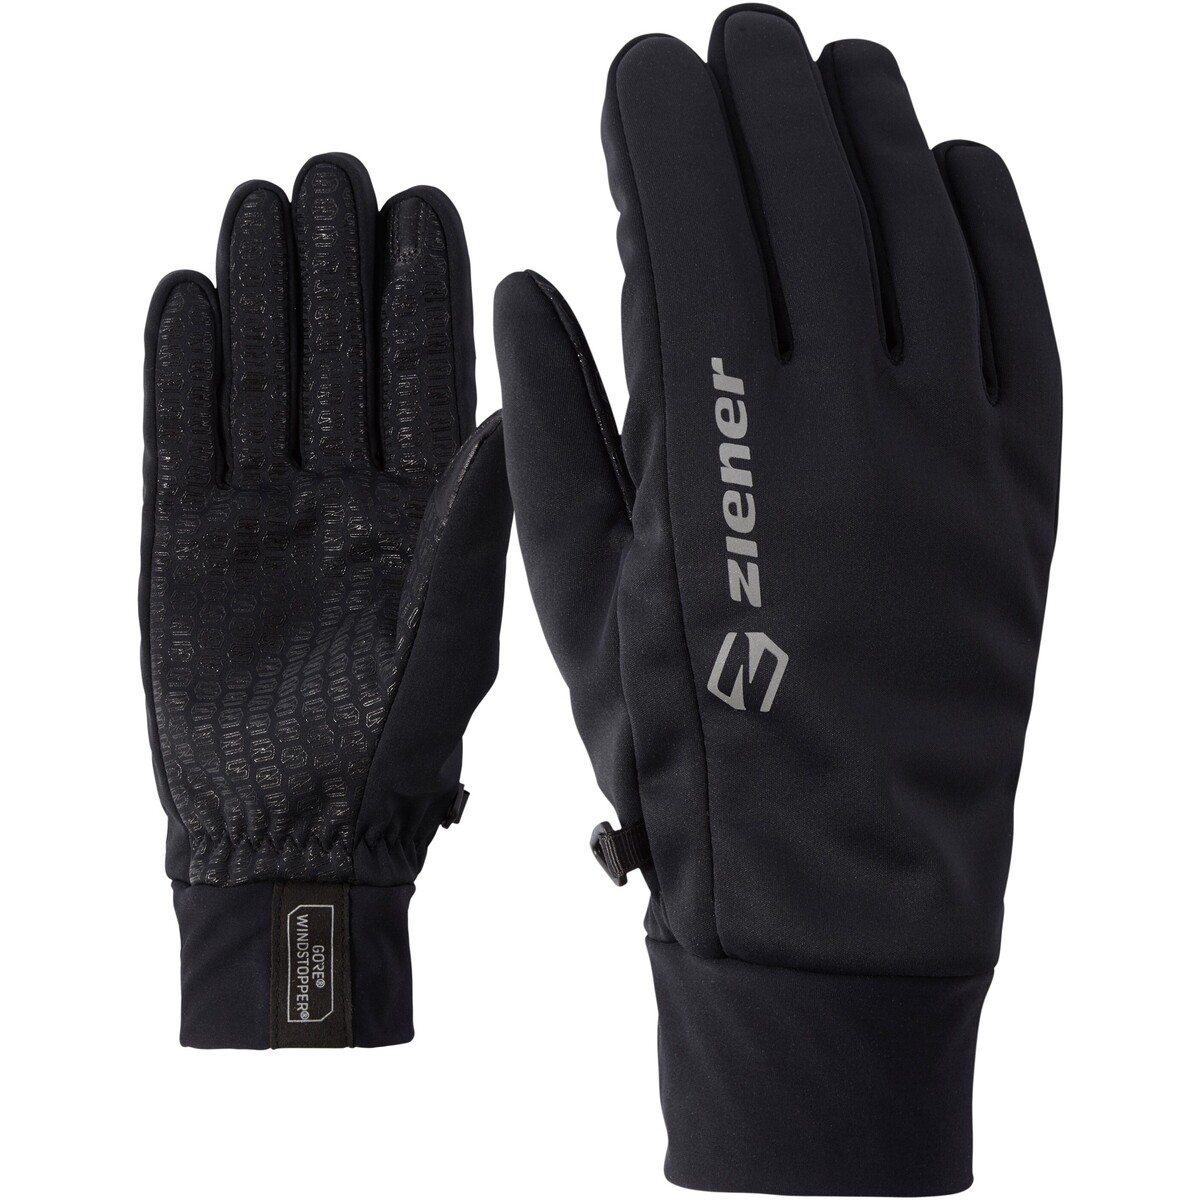 Accesorios textil Guantes Ziener Ziener Irios Gws Touch Glove Multisport Negro